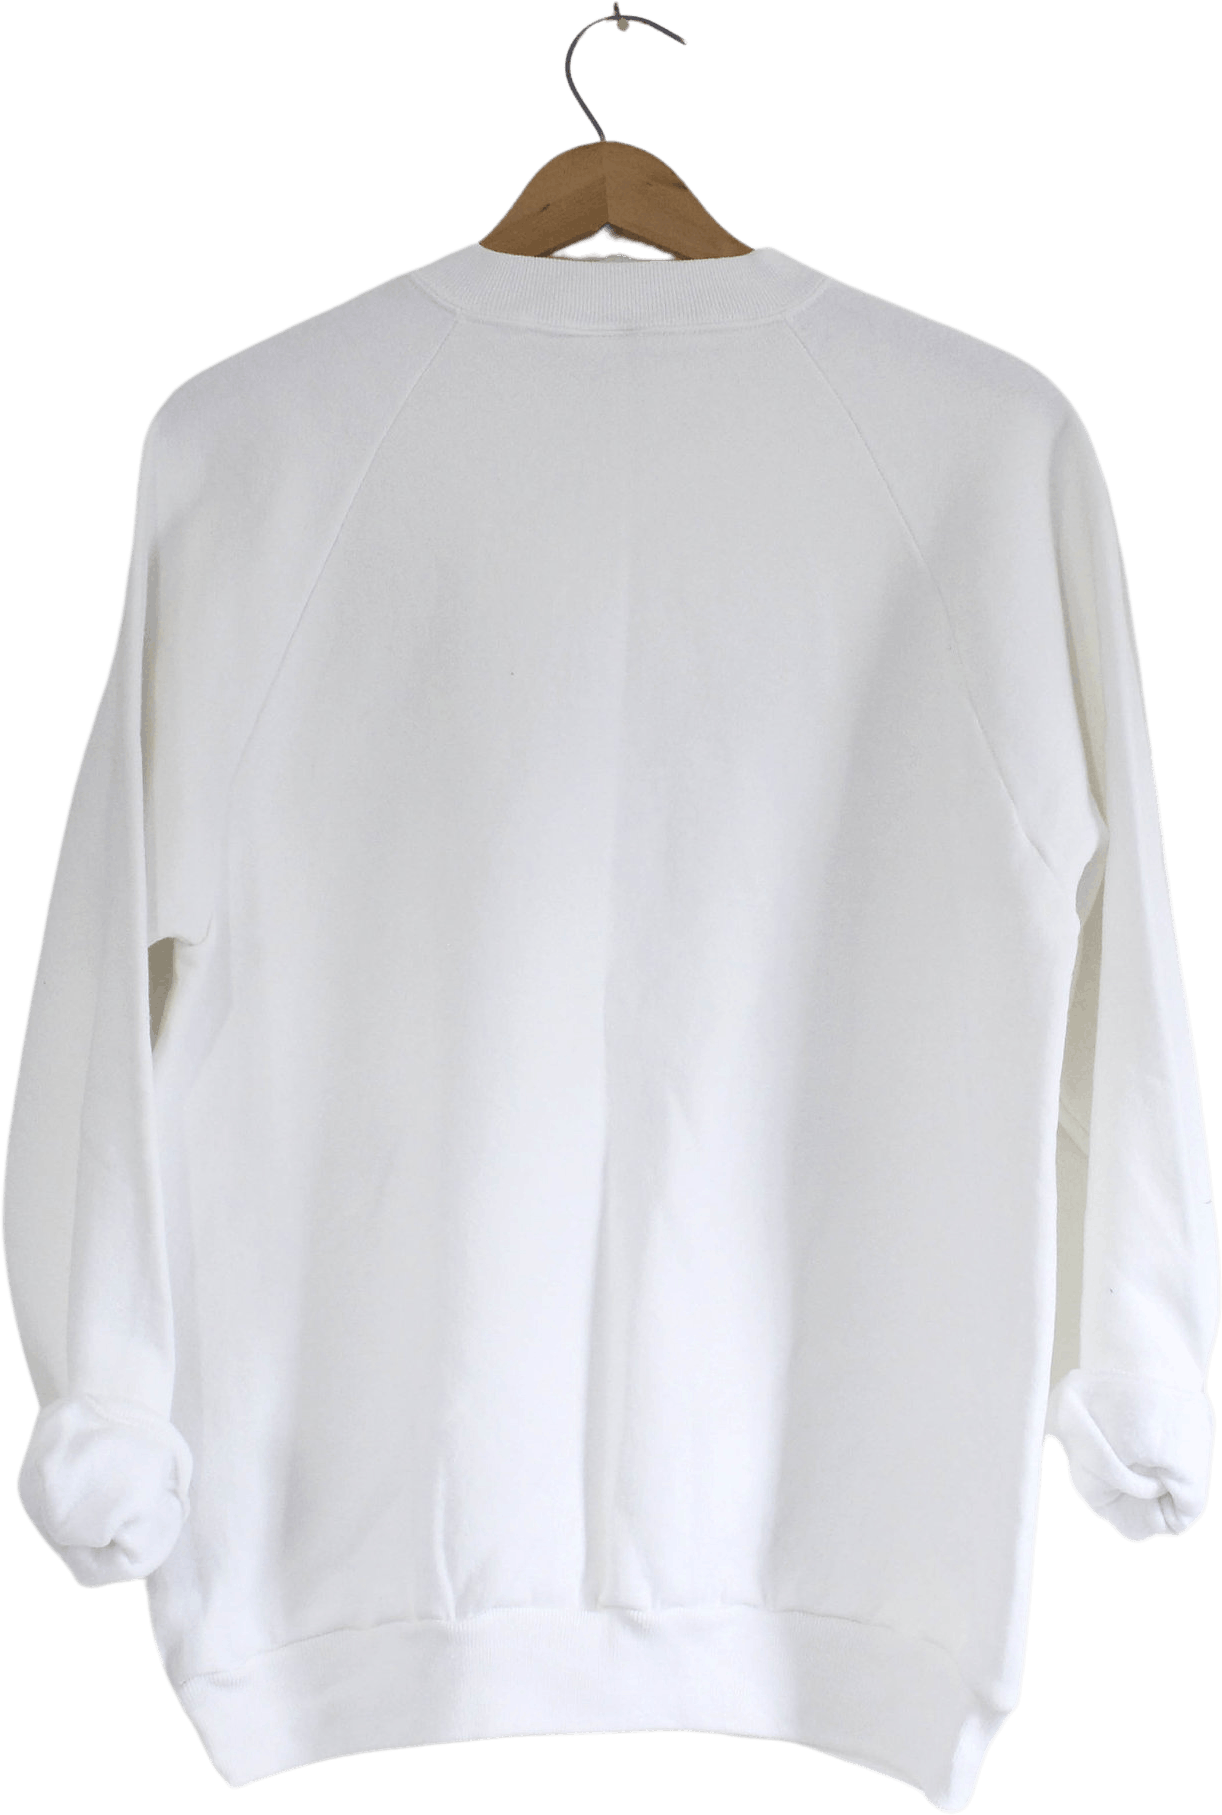 Vintage White Walt Disney World 15 Year Anniversary Cotton Sweatshirt ...